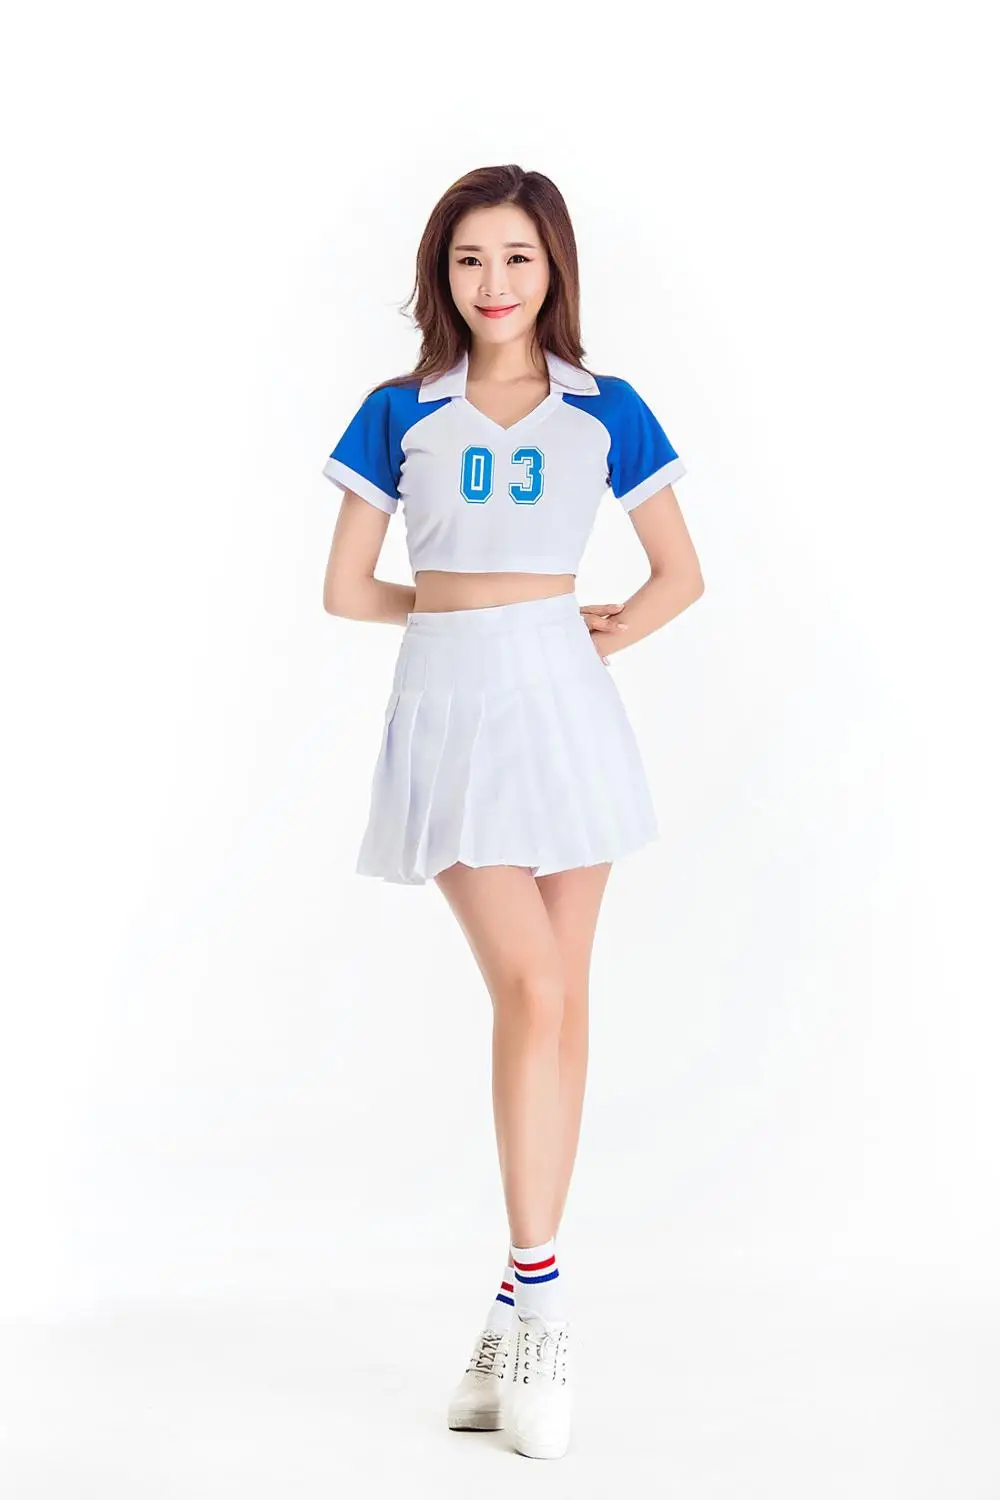 Южнокорейский для женщин команды средней школы для девочек Футбол Баскетбол Детский костюм чирлидерши спортивные Униформа Чирлидера топ с юбкой - Цвет: style C